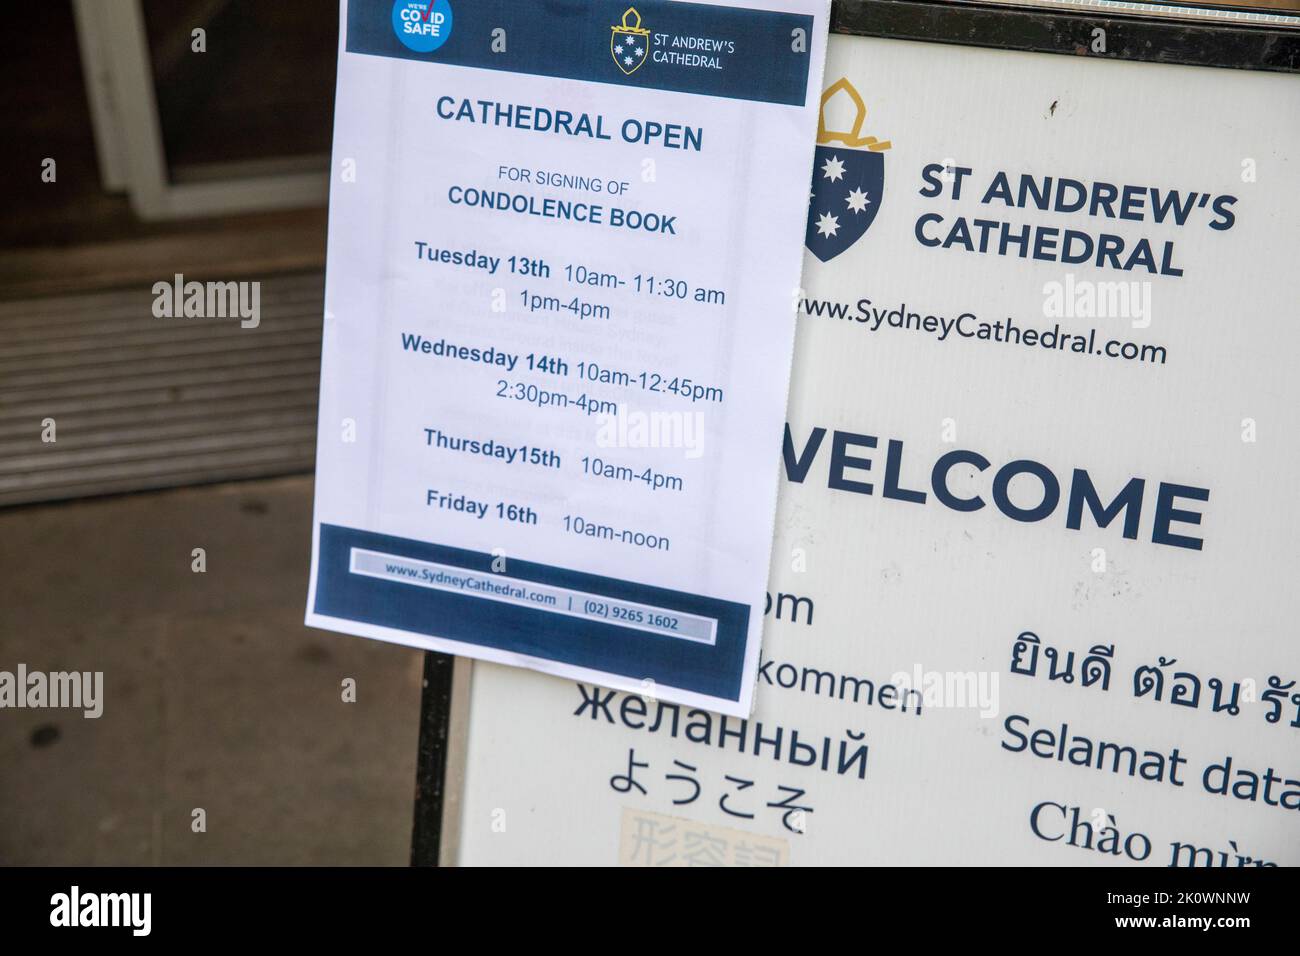 St Andrew's Cathedral in der George Street Sydney, Australien. 13. Sep, 2022. öffnungszeiten der kathedrale für Menschen, die das Kondolenzbuch nach dem Tod Ihrer Majestät Königin Elizabeth II unterzeichnen möchten Kredit: martin Berry/Alamy Live News Stockfoto